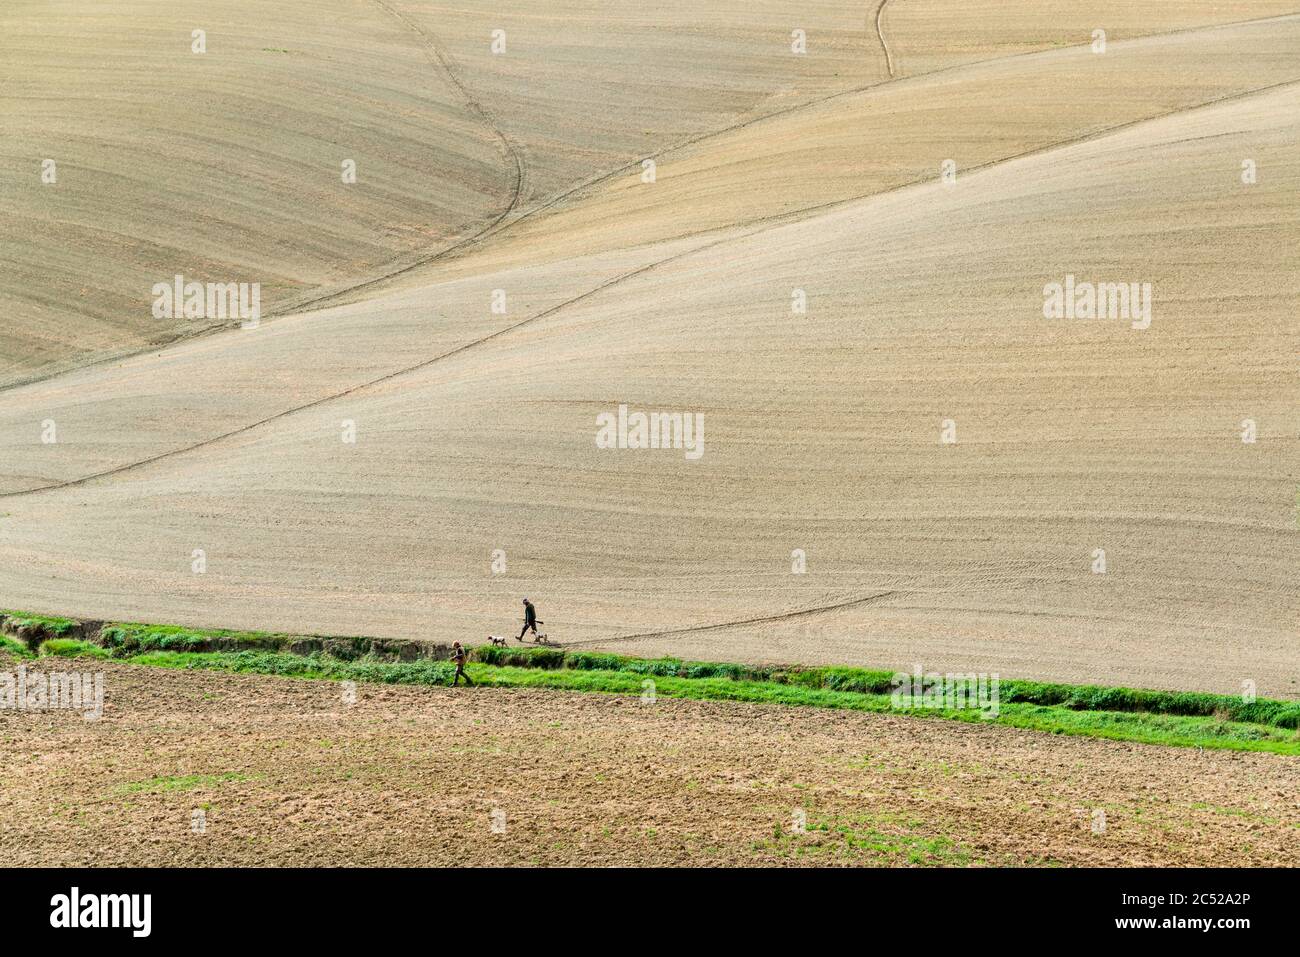 Die Crete Senesi südlich von Siena im Herbst. Nach der Ernte kommt der  erdige Charakter der Landschaft durch die verschiedenen Farben des Ackerbodens Stock Photo